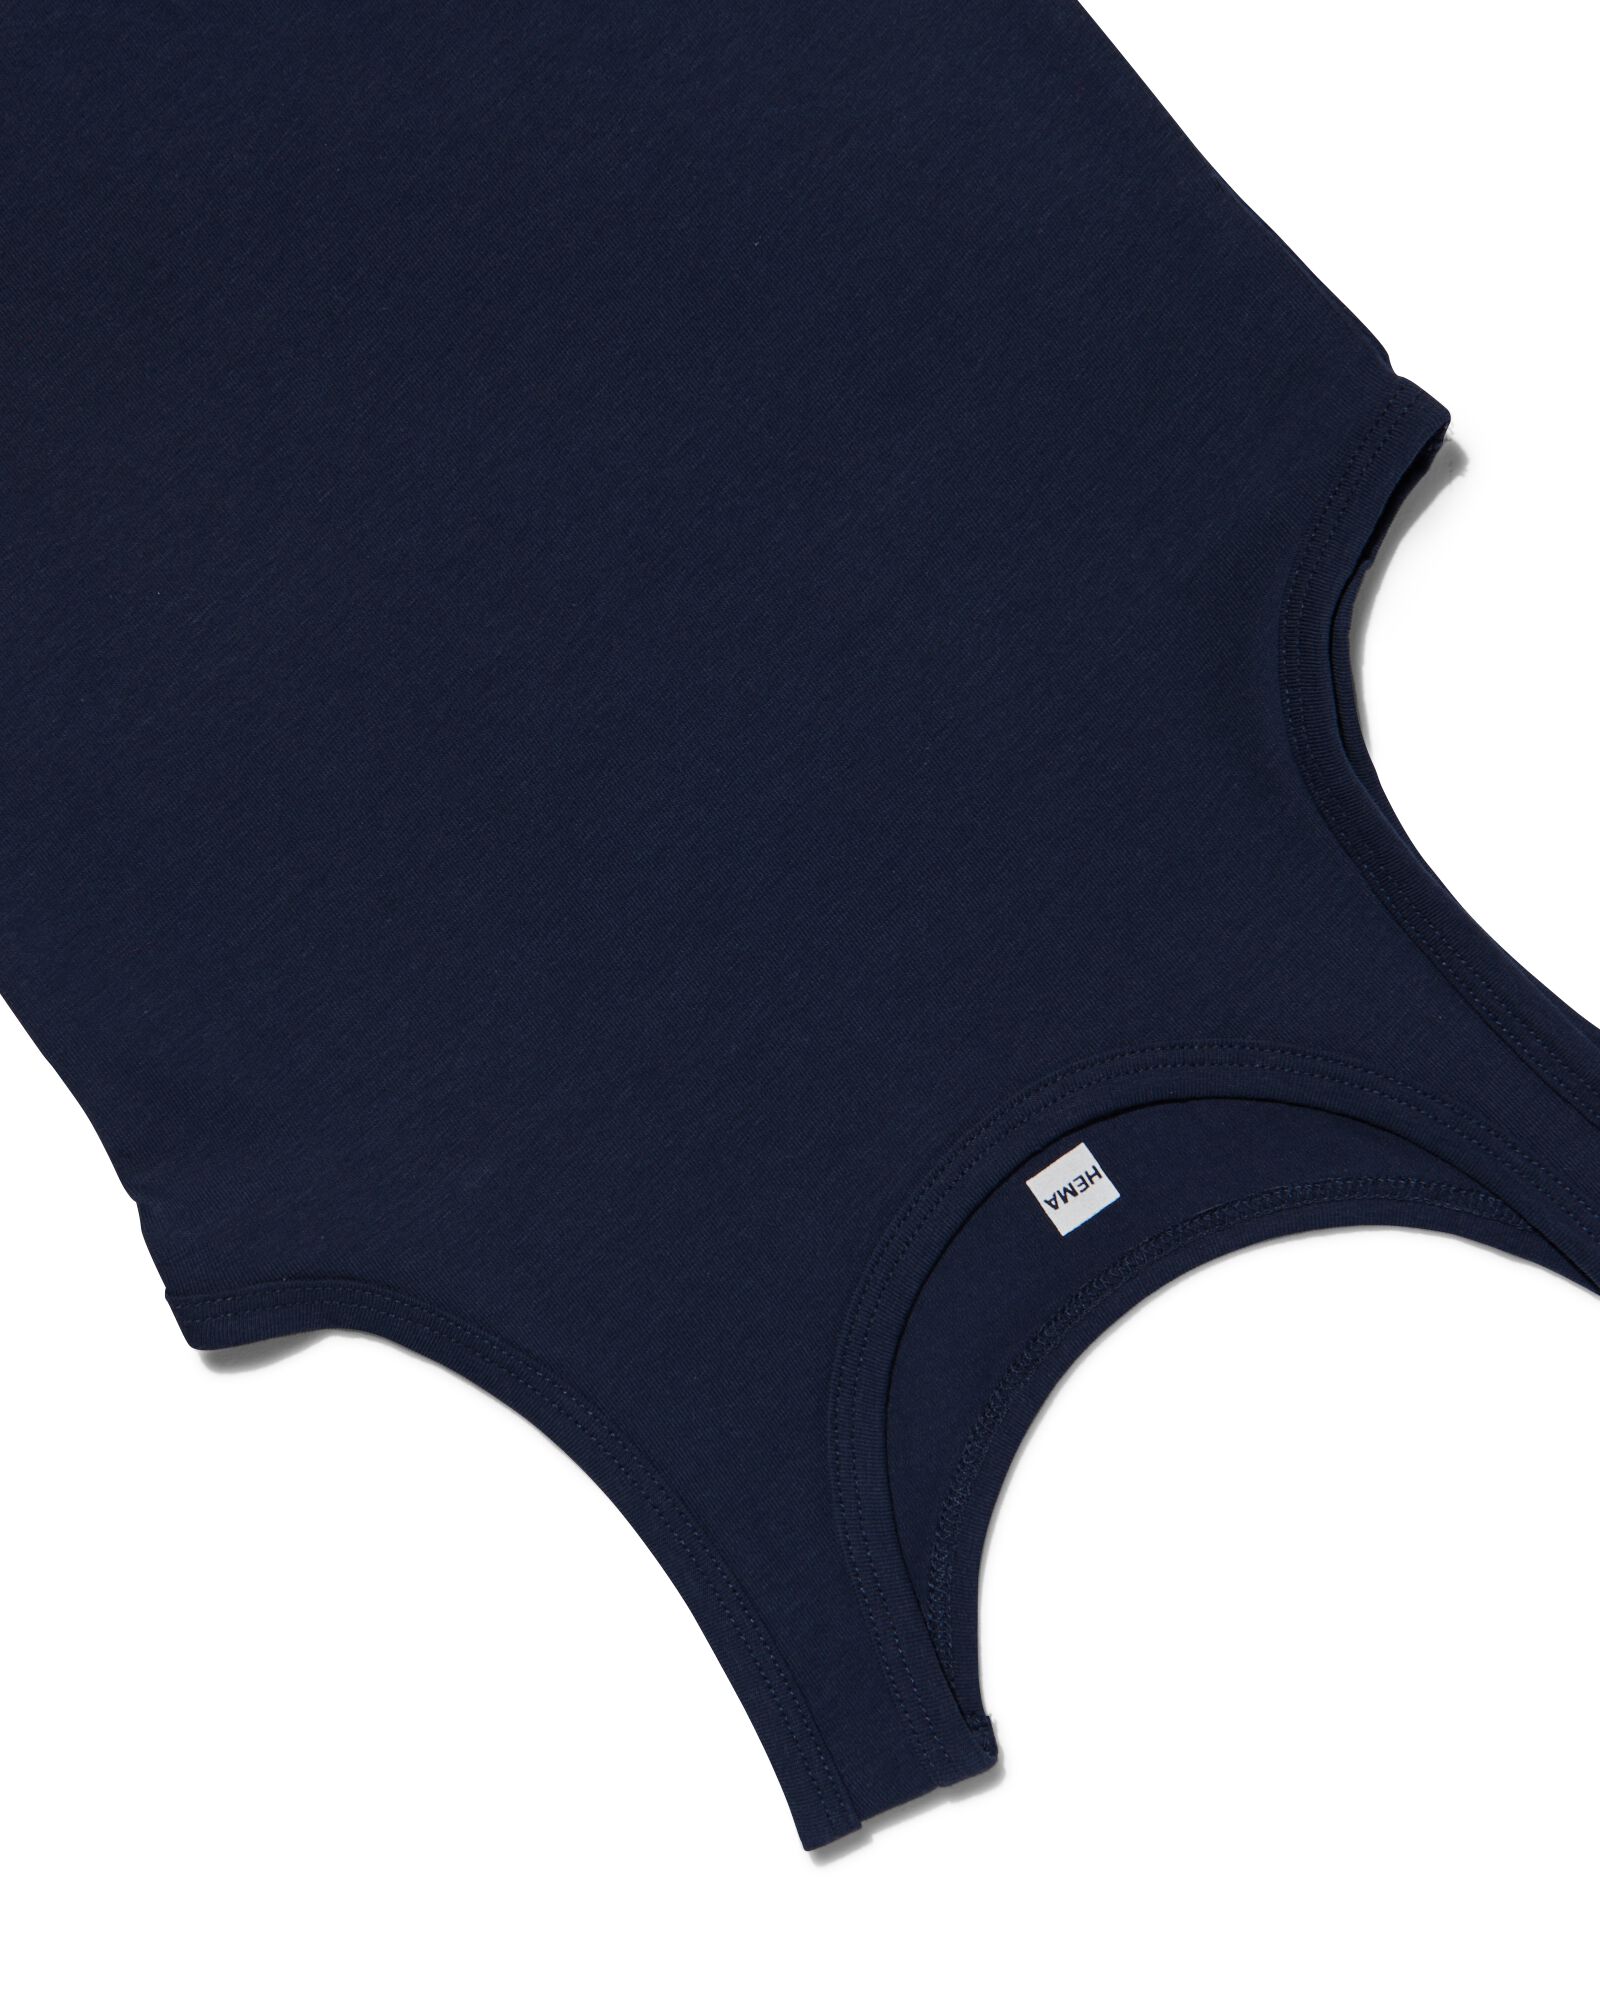 2er-Pack Kinder-Hemden dunkelblau 98/104 - 19280722 - HEMA